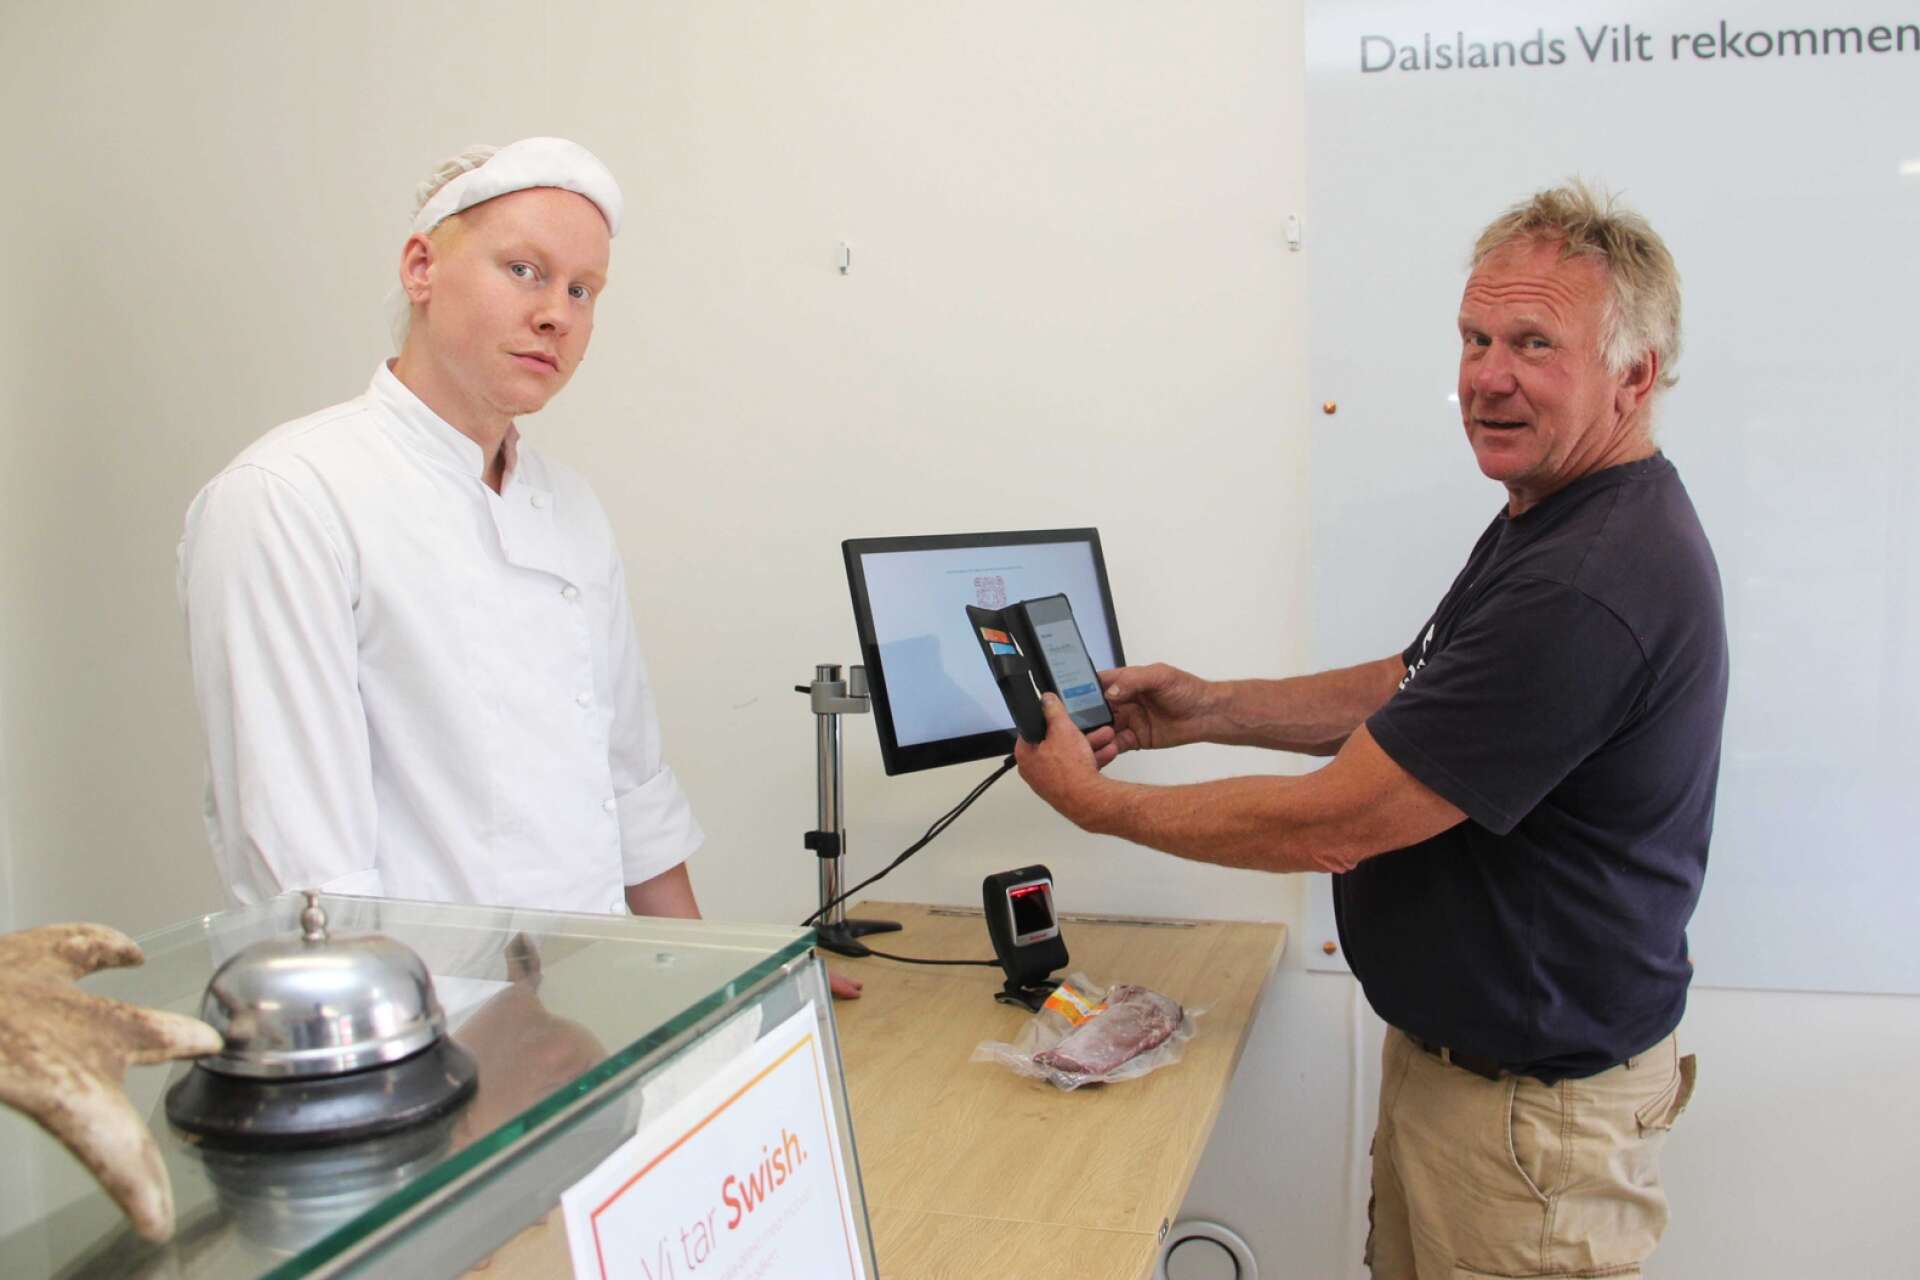 Kjell Johansson, vd Dalslands Vilt, demonstrerar den nyinstallerade tekniken vid disken där Johan Andersson servar kunder.